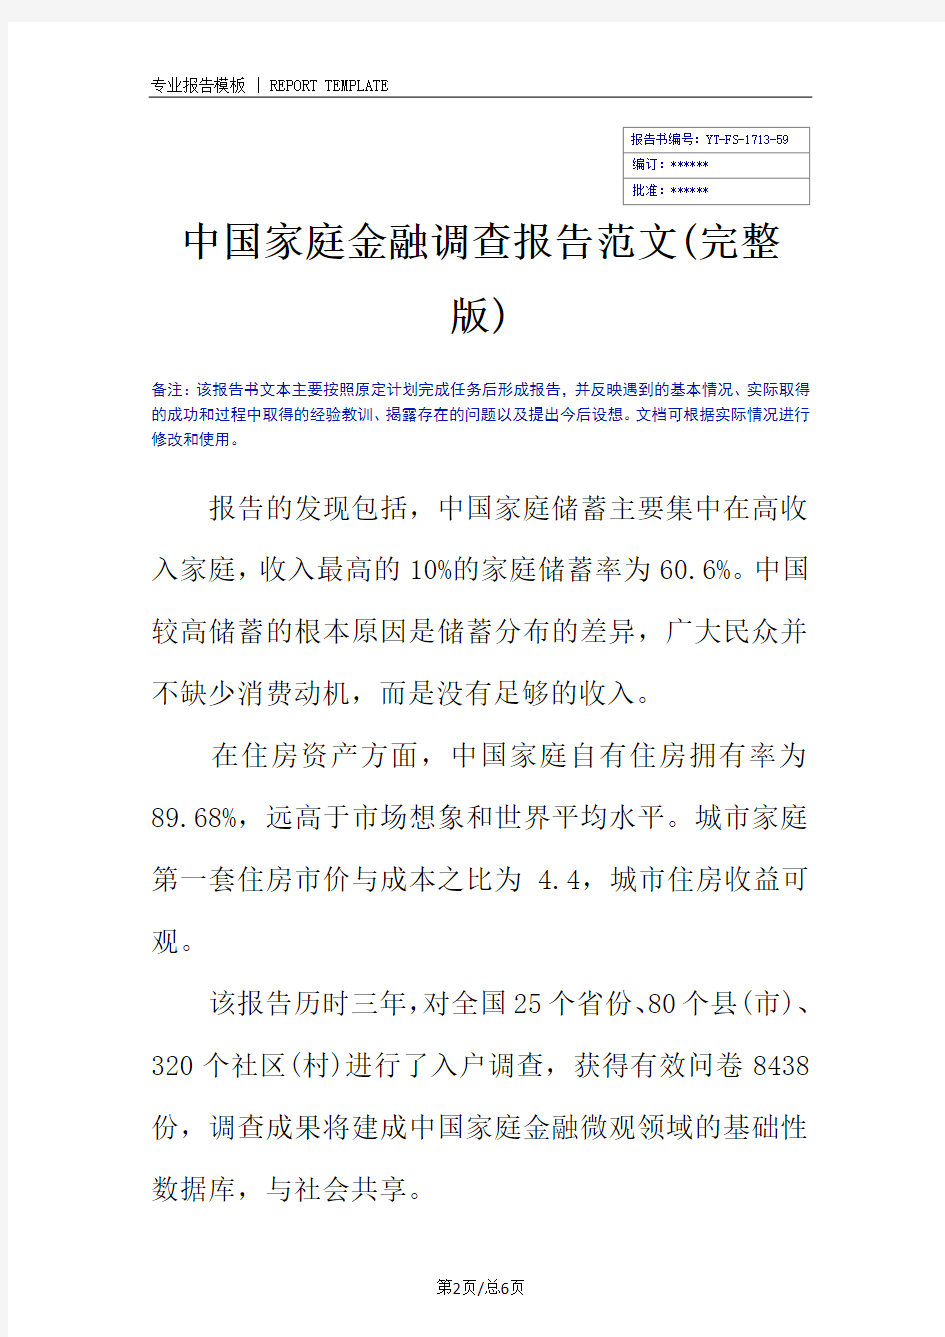 中国家庭金融调查报告范文(完整版)